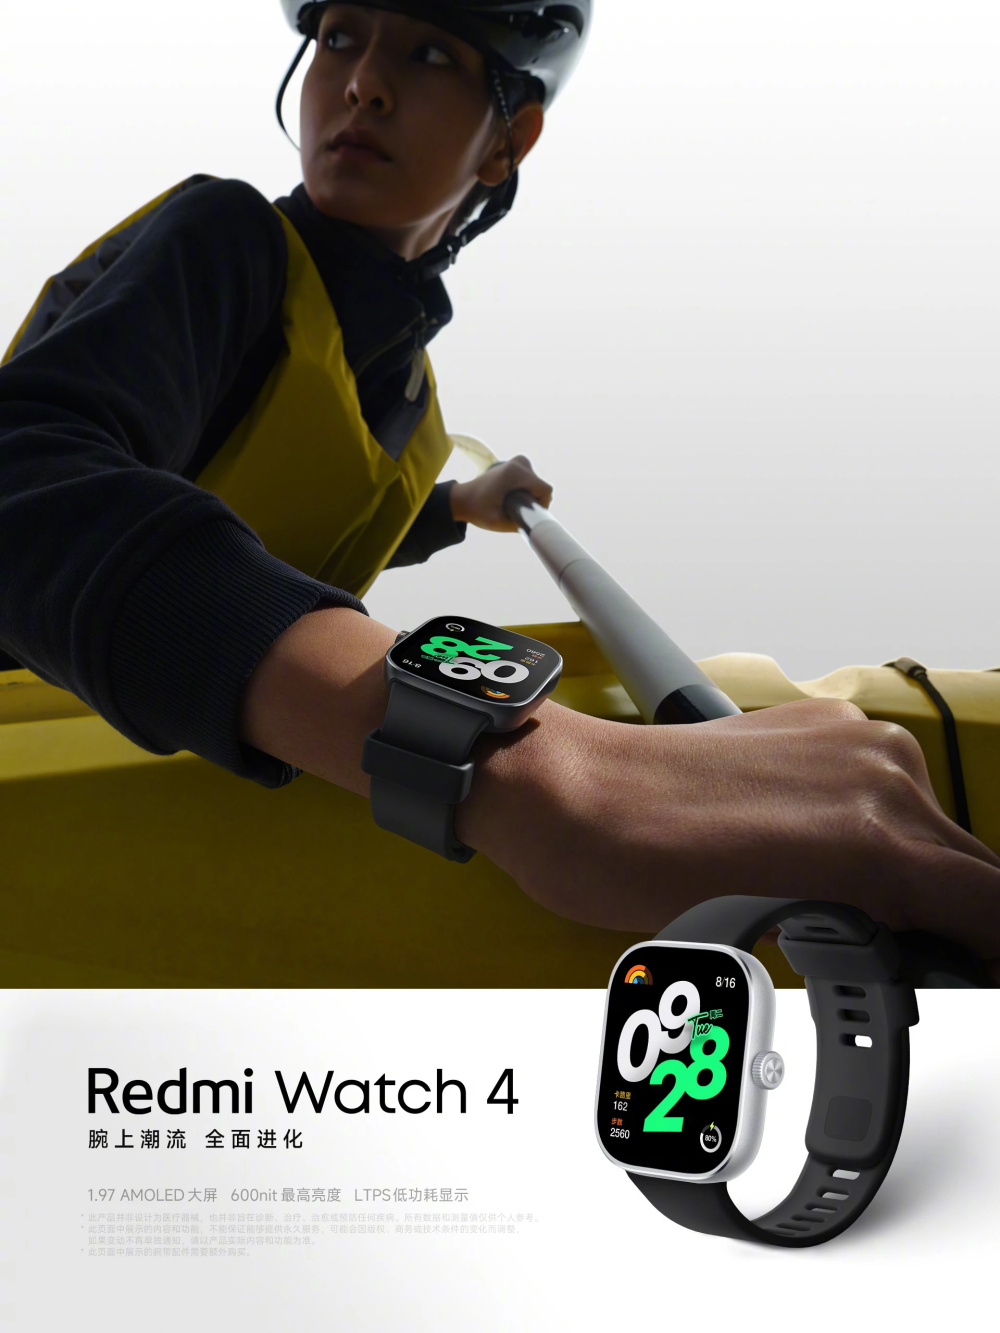 Redmi Watch 4 станут первыми металлическими часами бренда